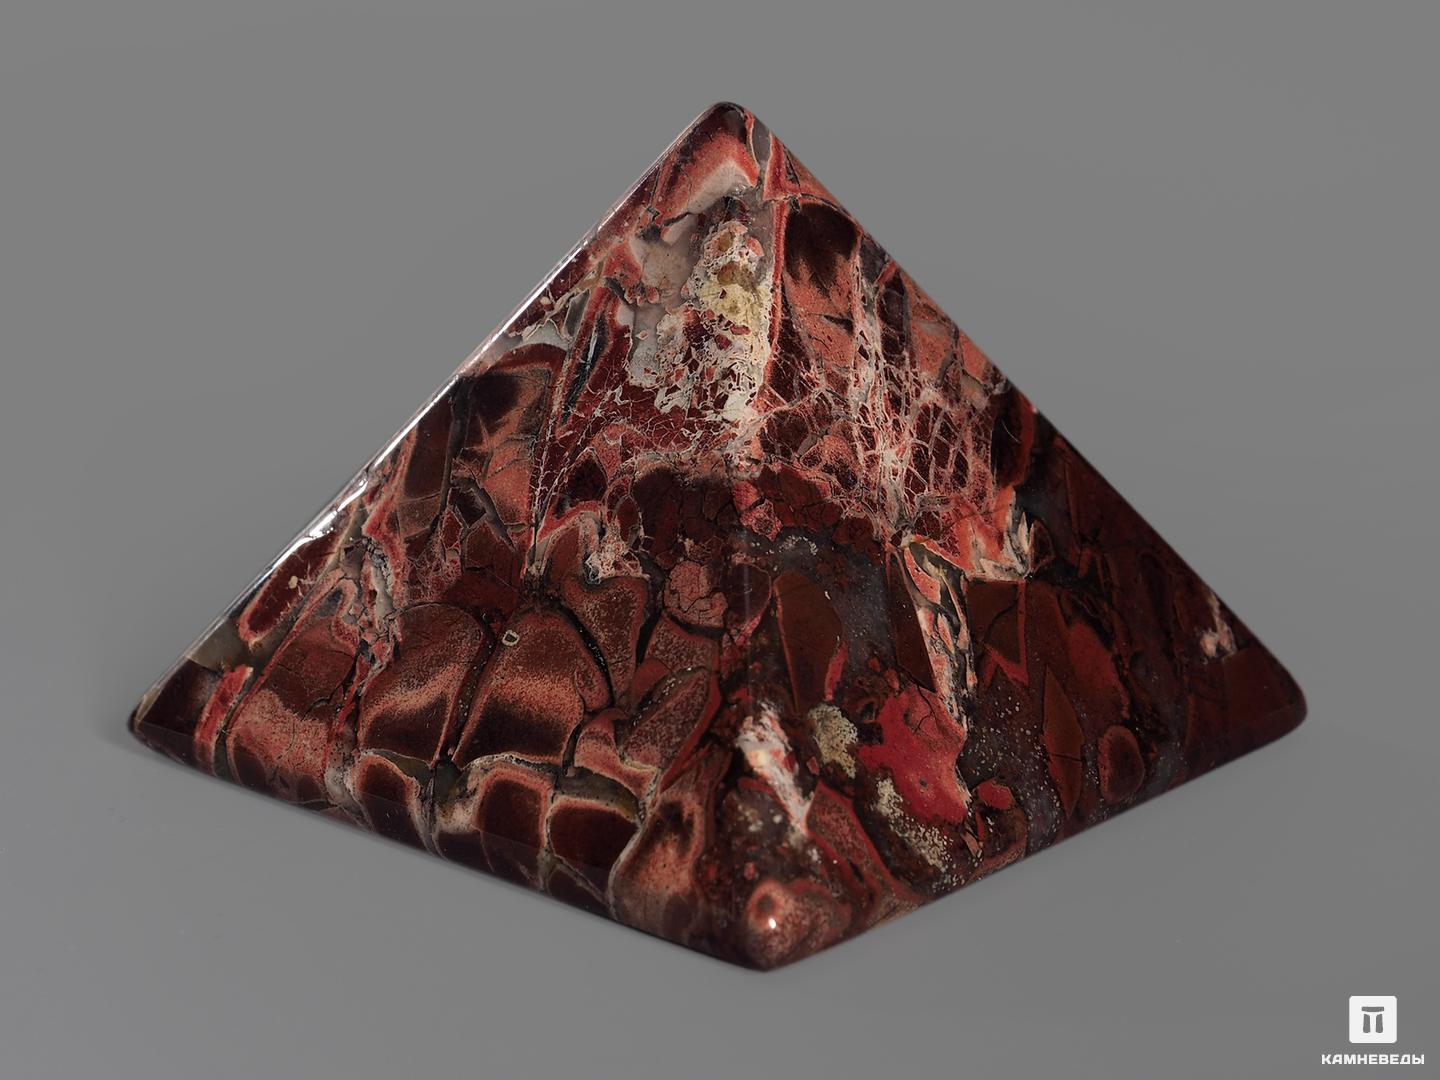 Пирамида из красной яшмы, 5х5х3,2 см конспект слушателя института красной профессуры